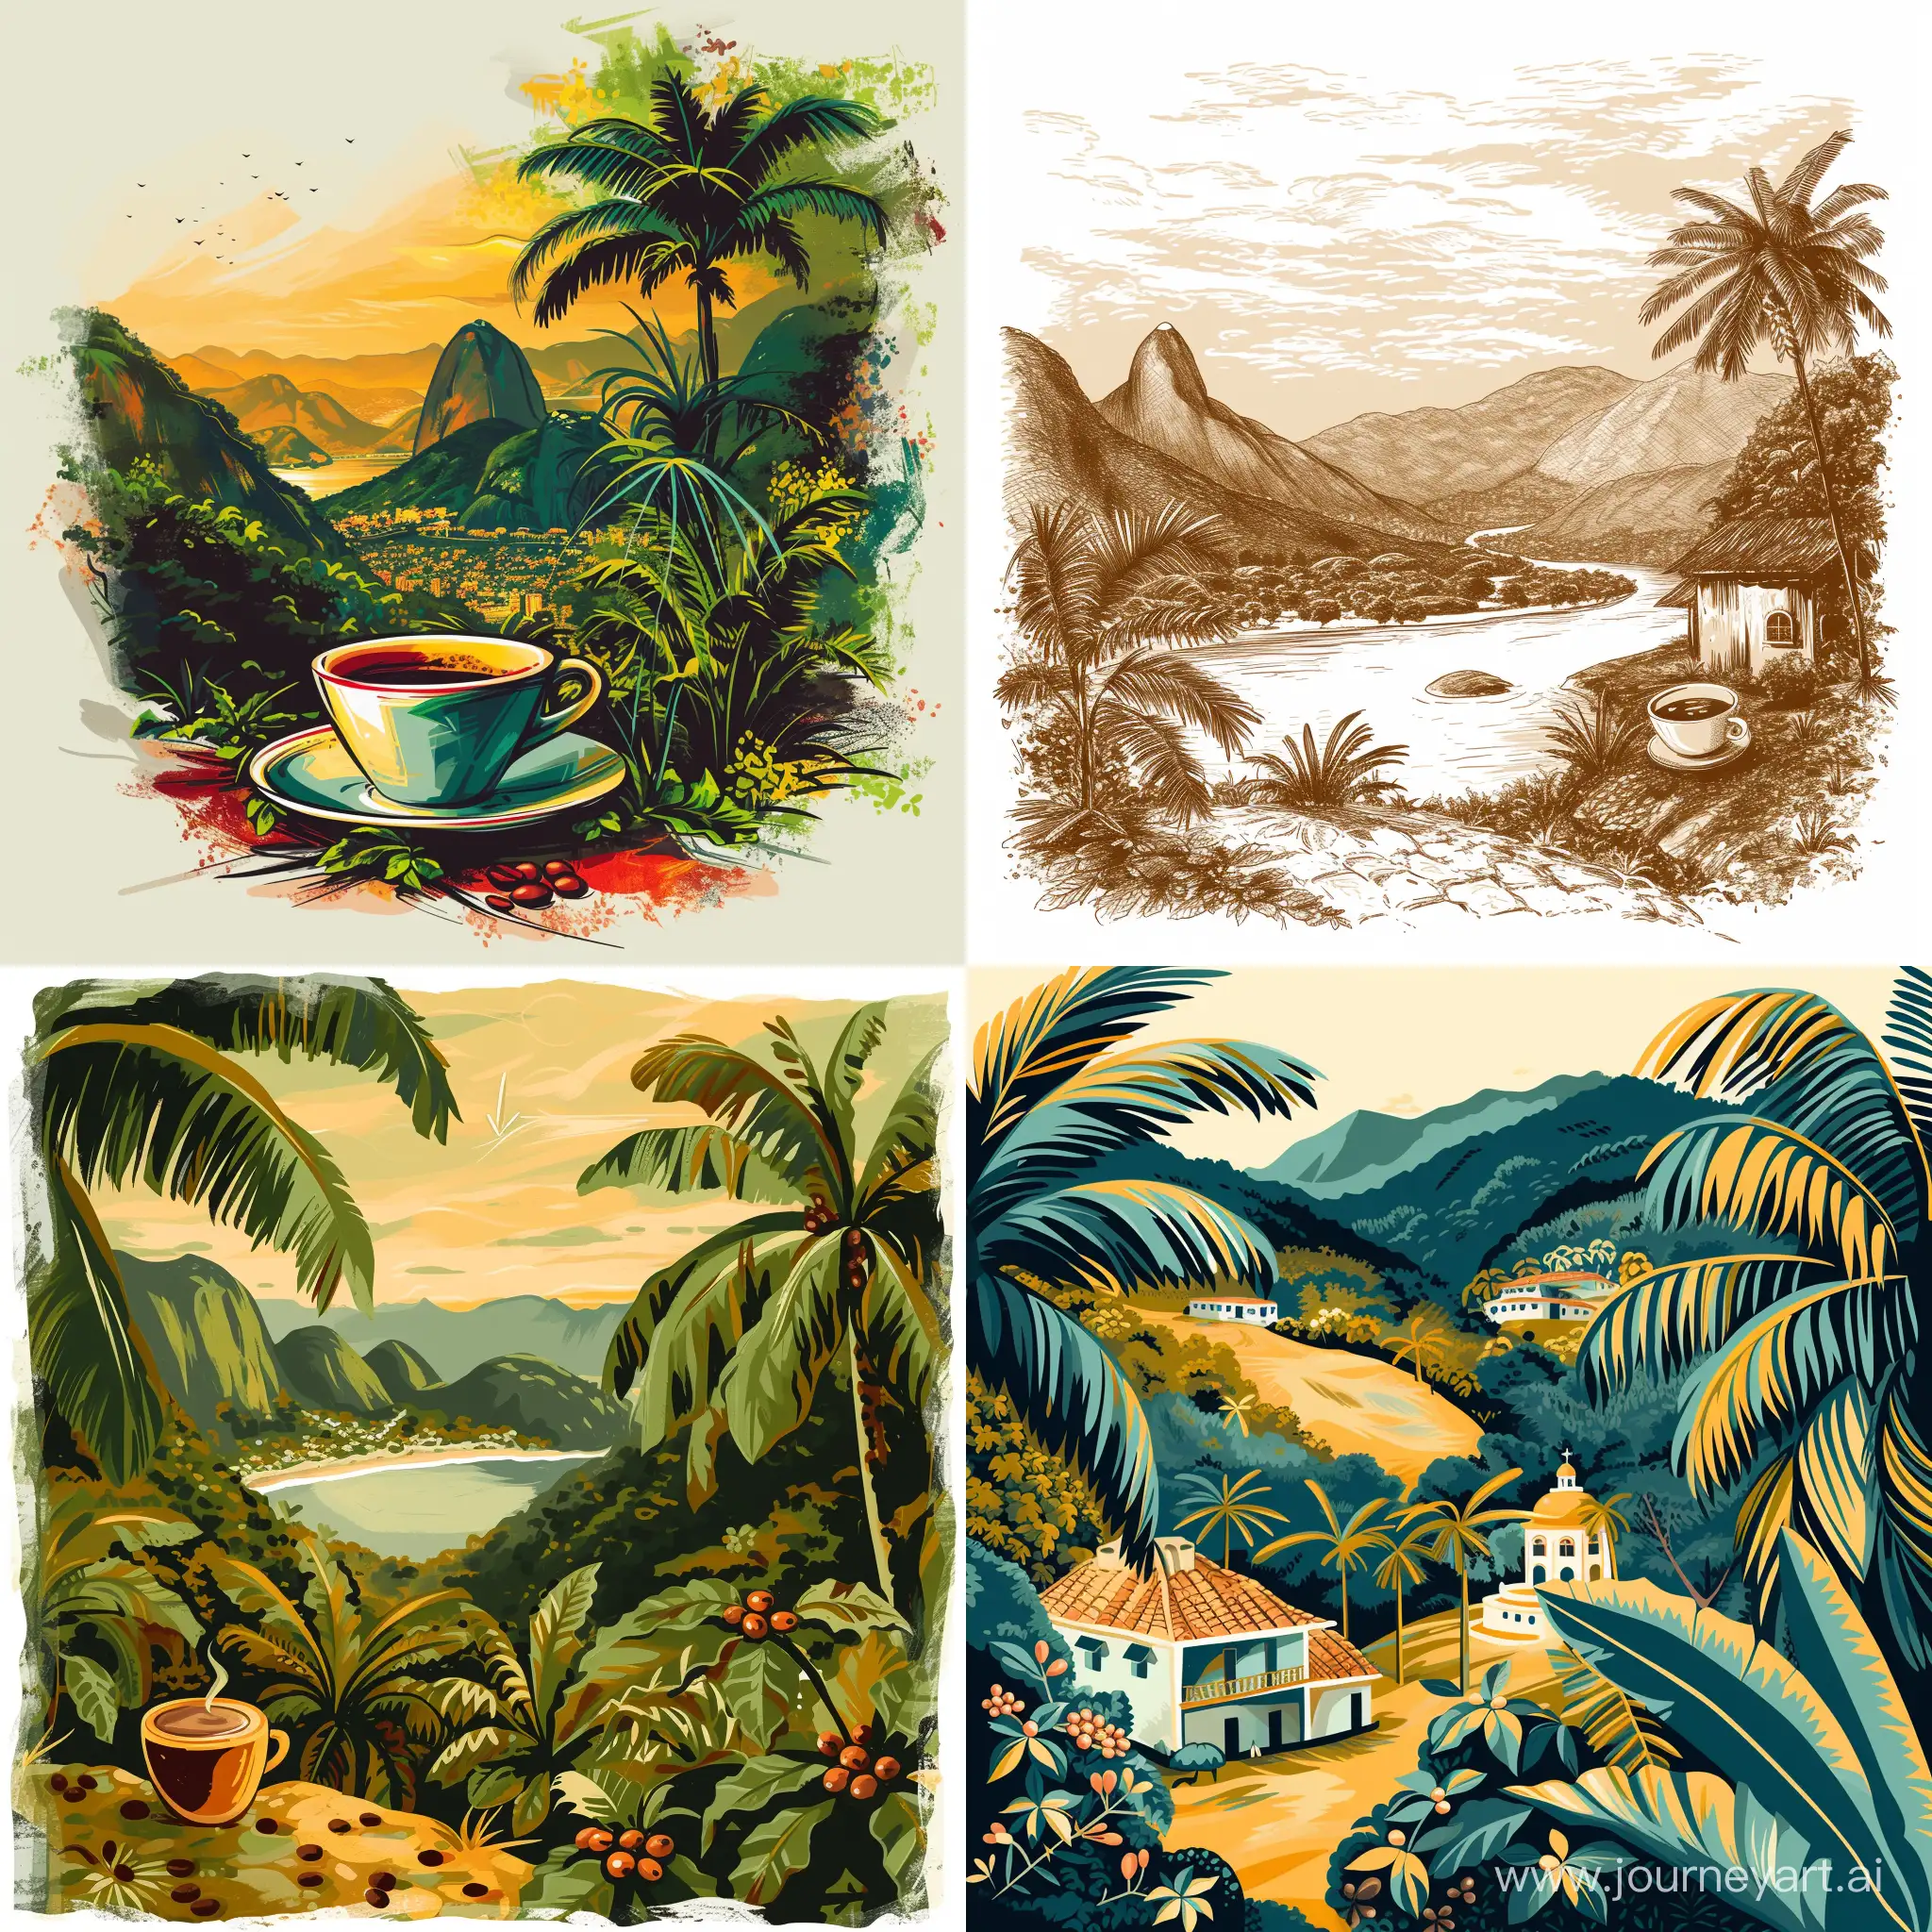 иллюстрация нарисованная кистями в  Photoshop из символов, пейзажа Бразилии и кофе.